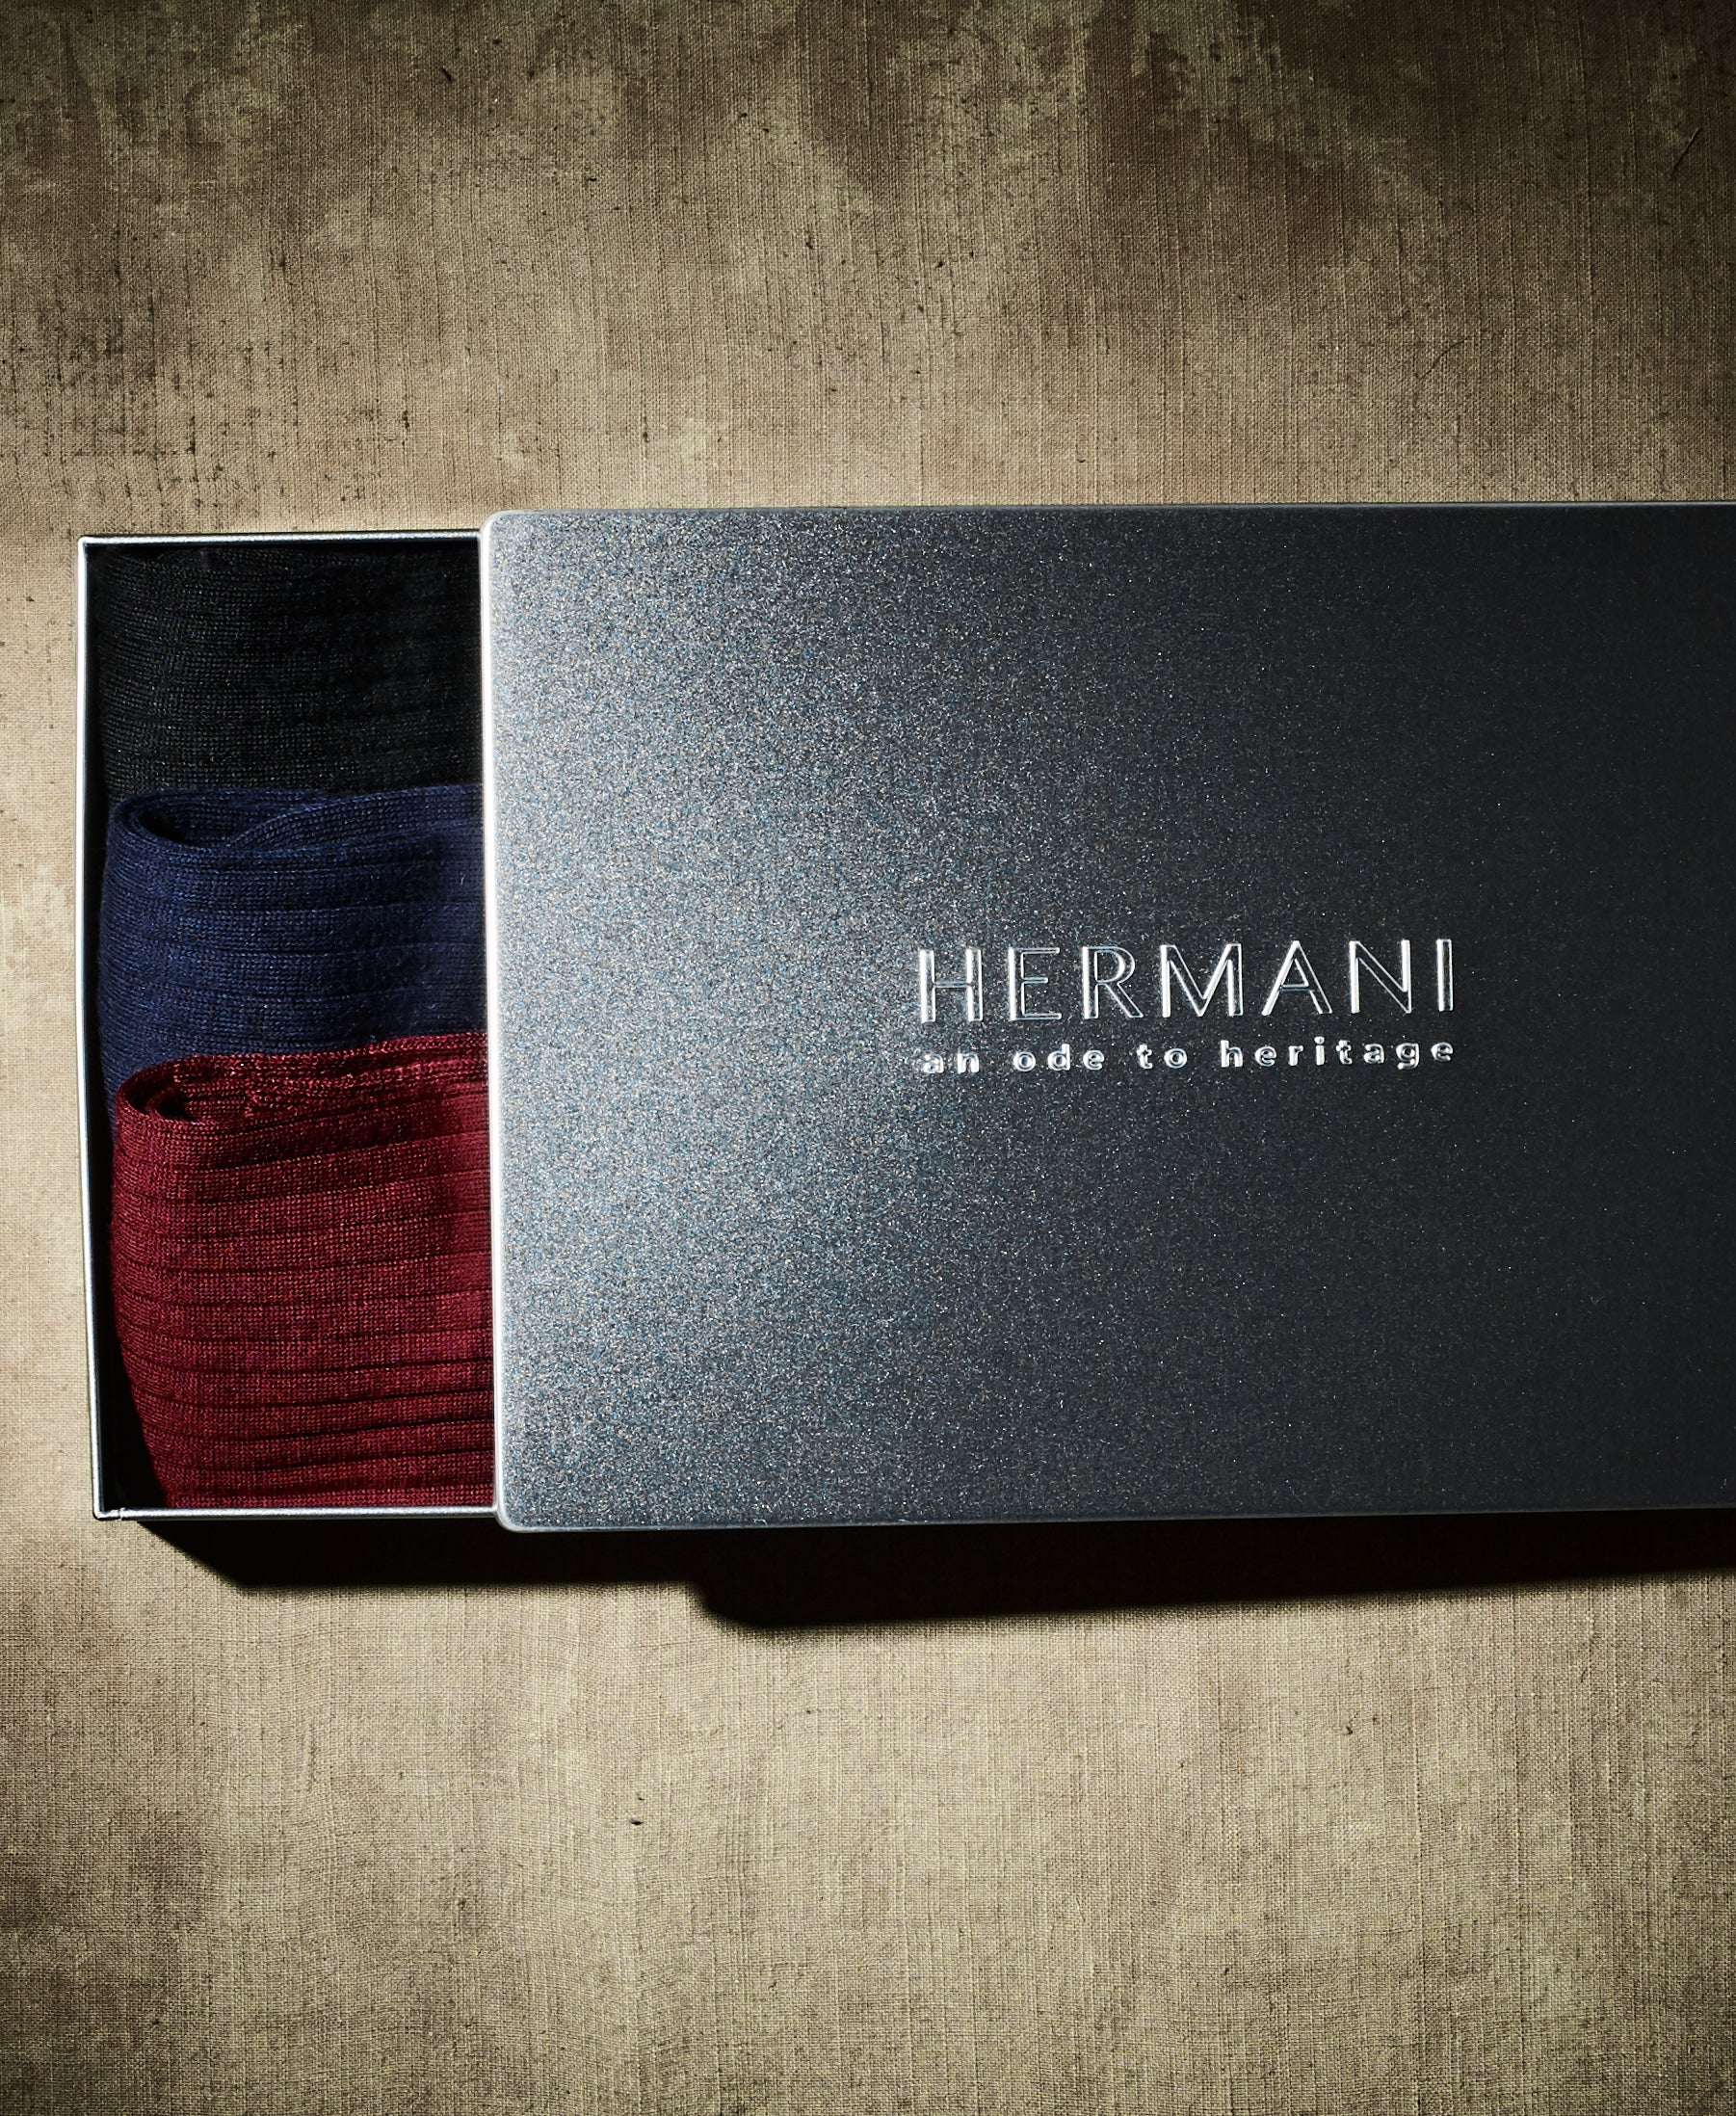 Pure Merino Wool Socks Giftbox